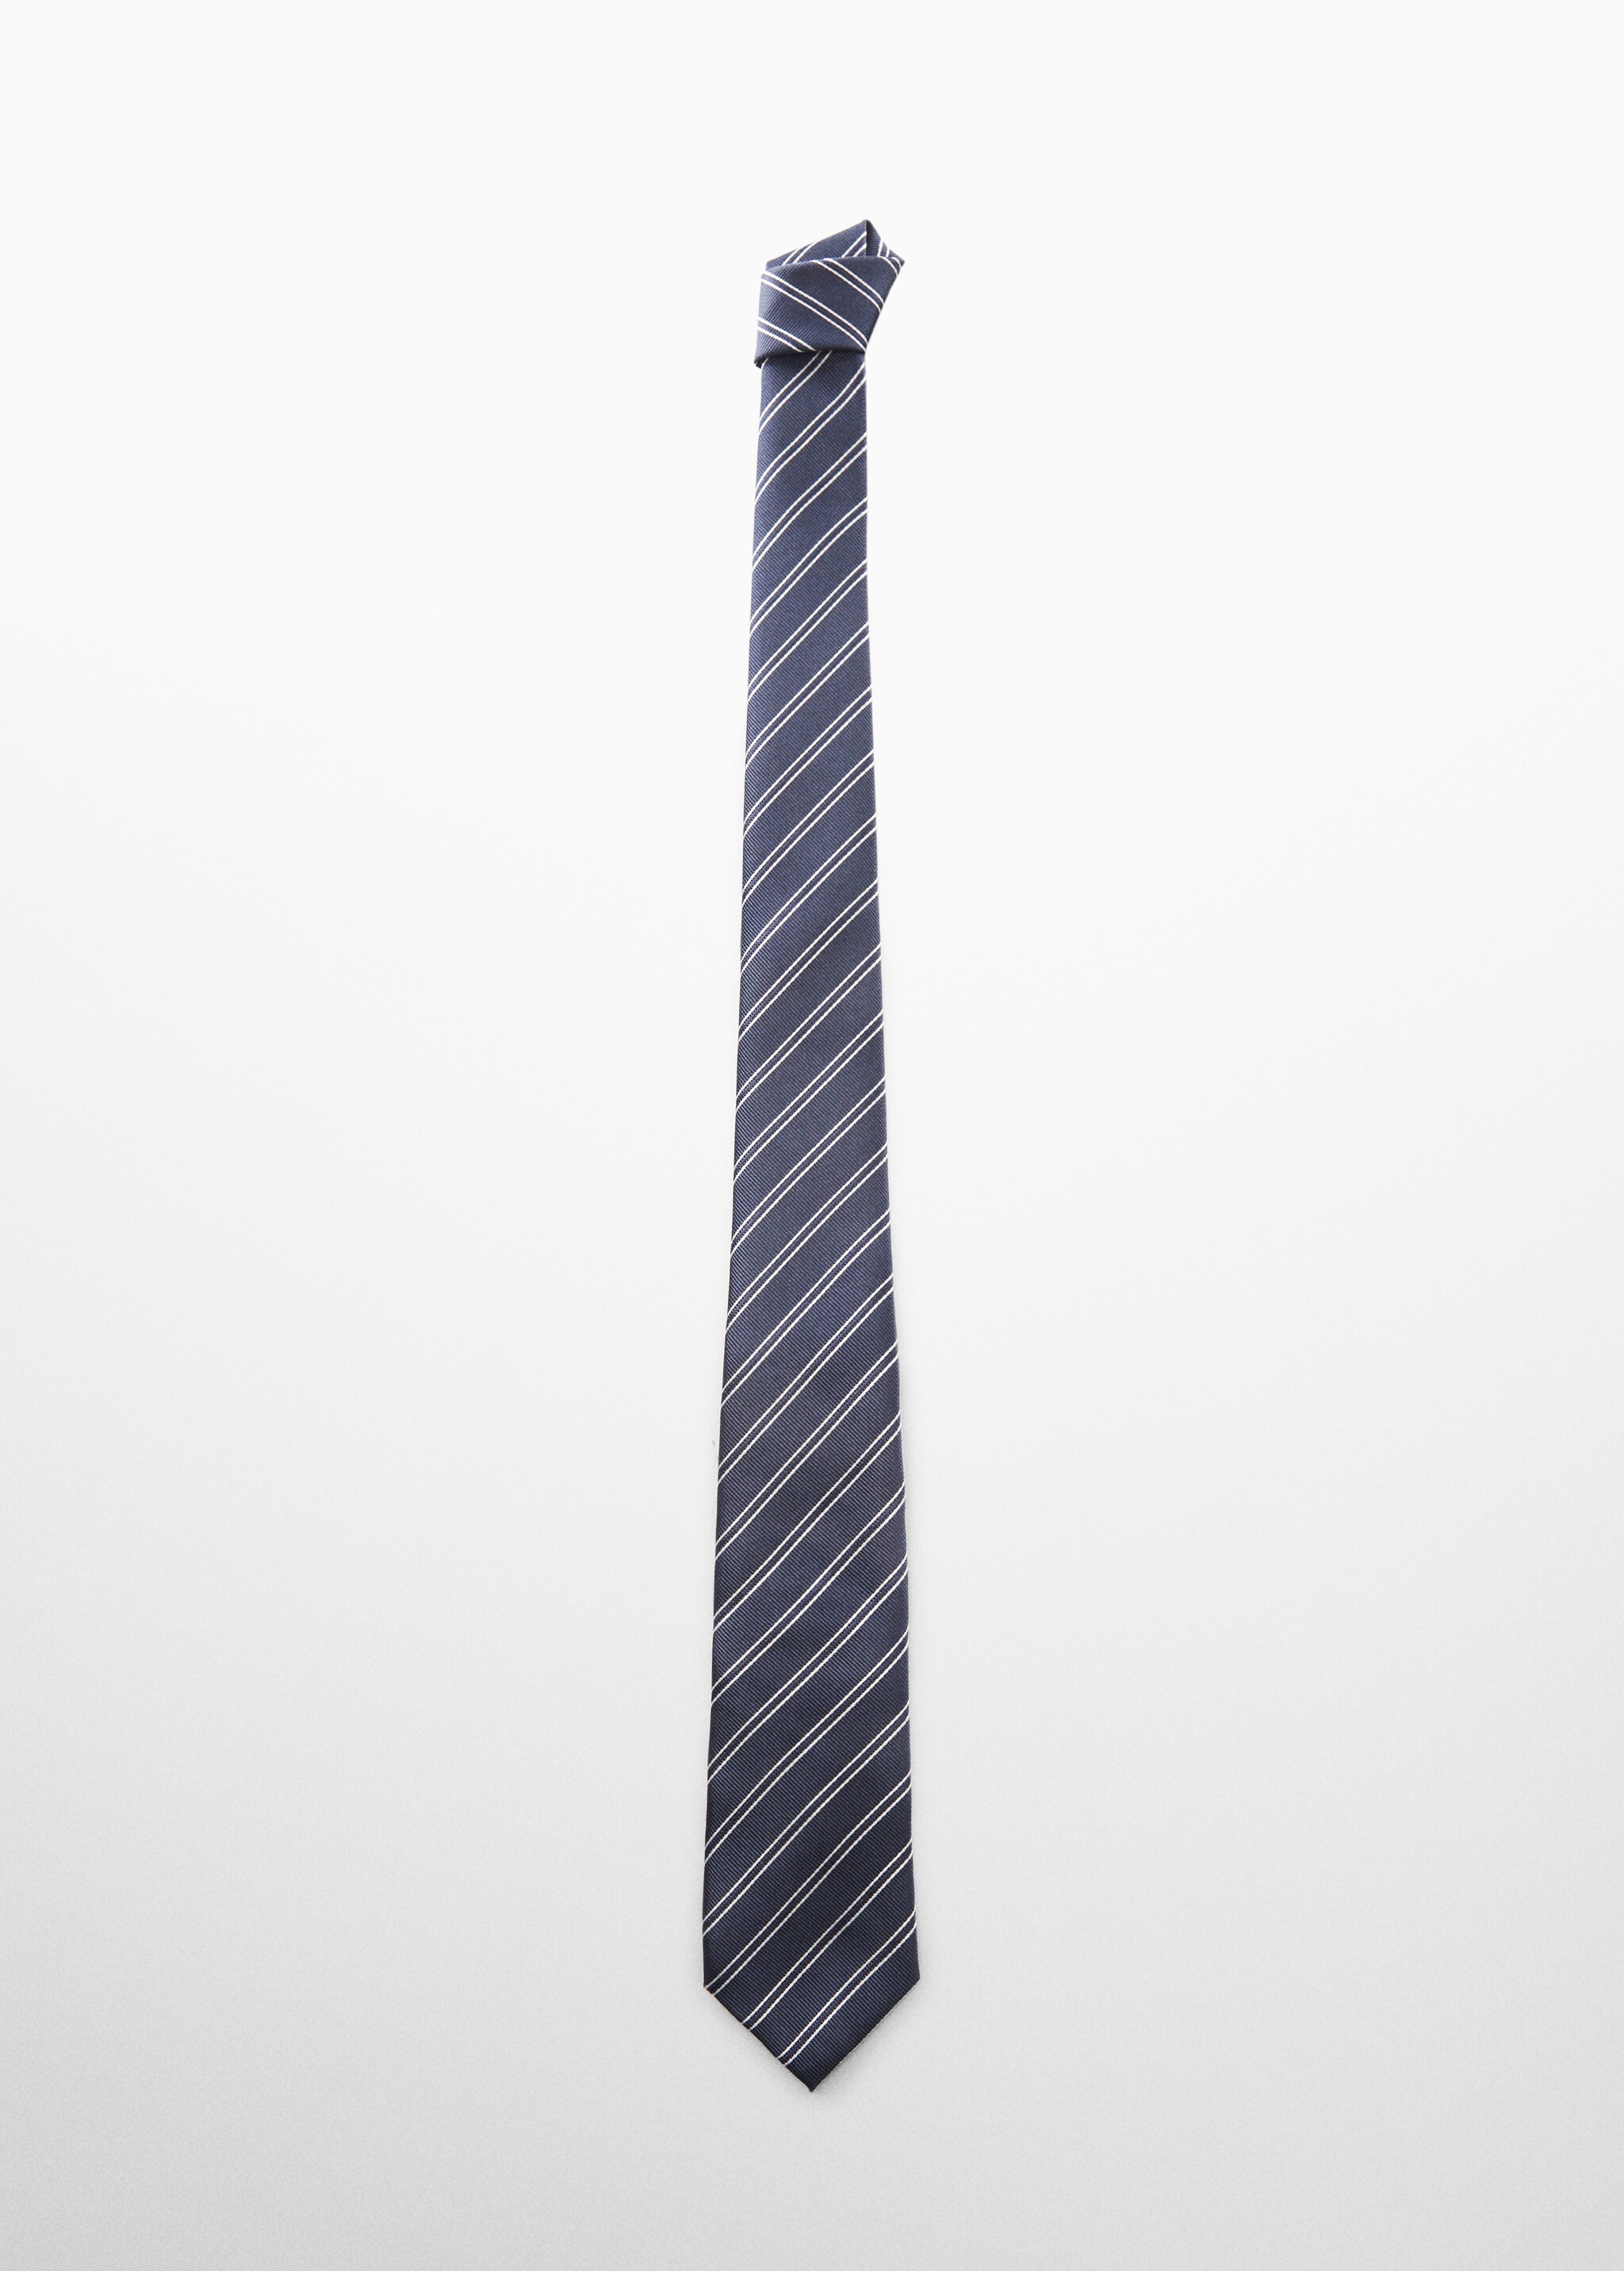 ربطة عنق مخططة مقاومة للبقع - منتج دون نموذج